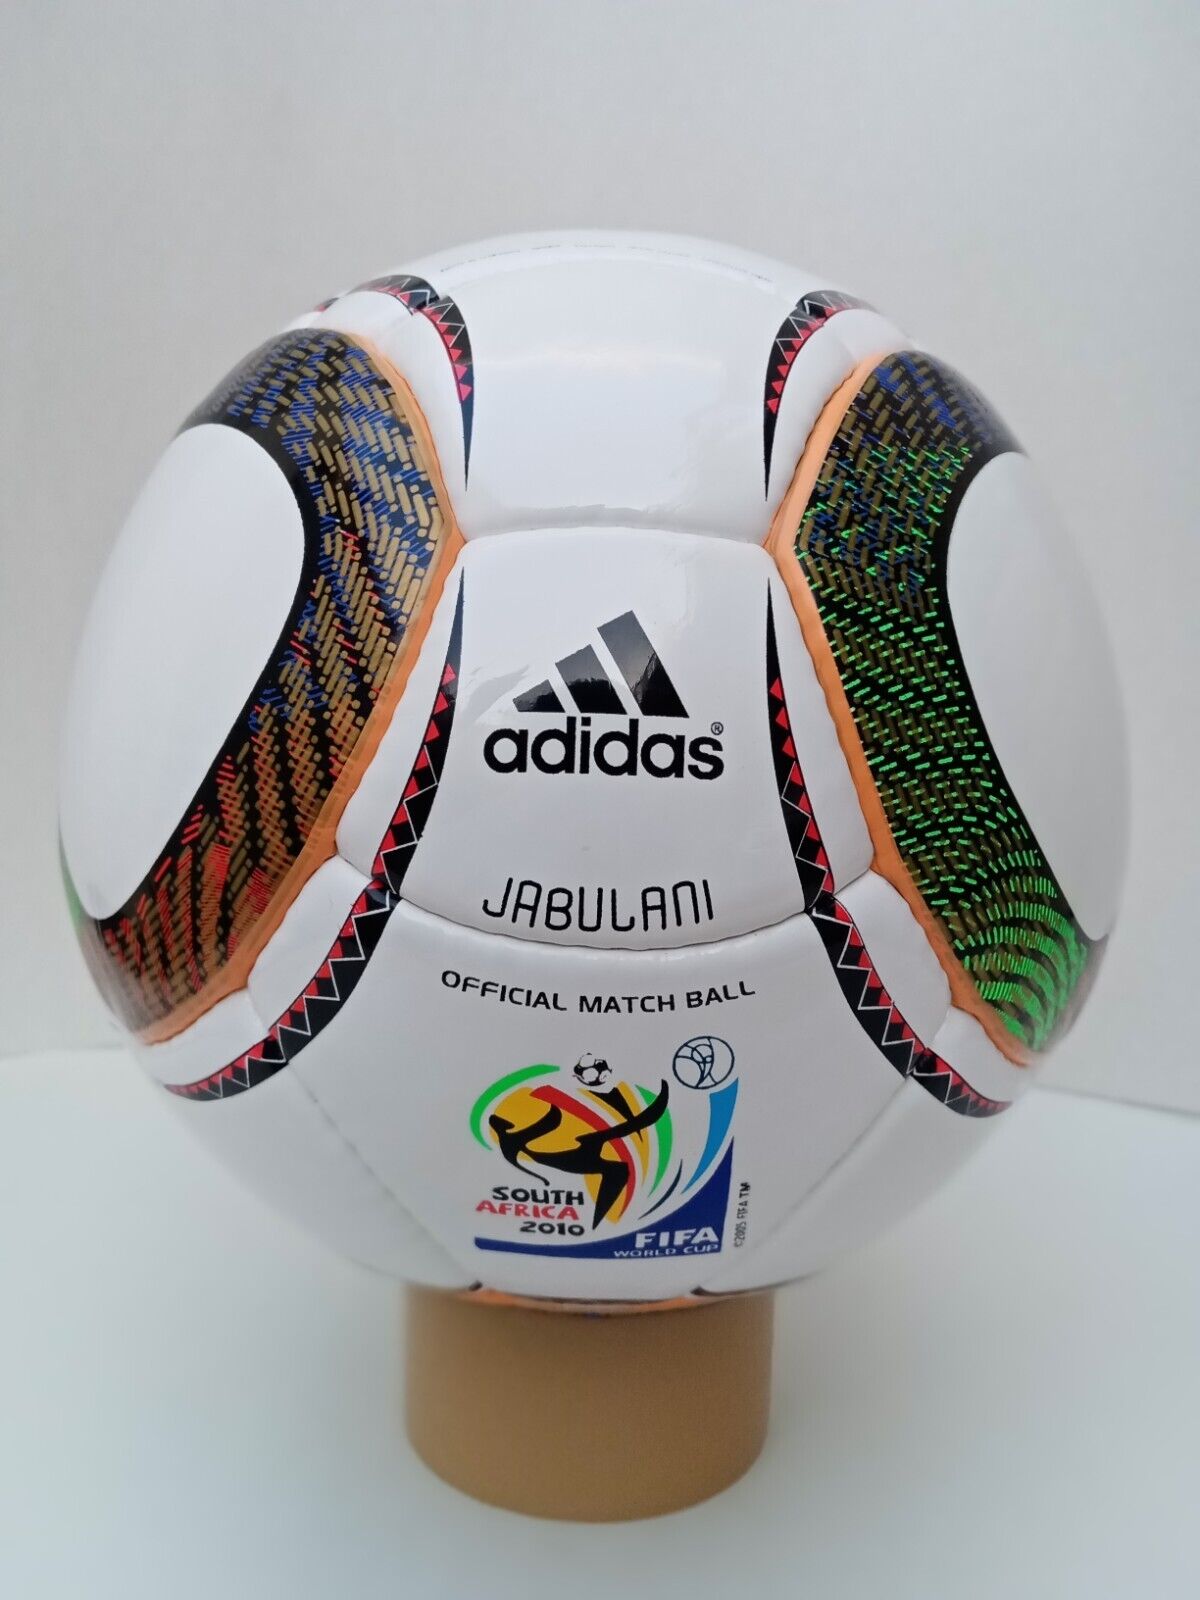 destacar Elección No se mueve Adidas Jabulani FIFA World Cup 2010 Ball Soccer Match Ball Size 5 | eBay